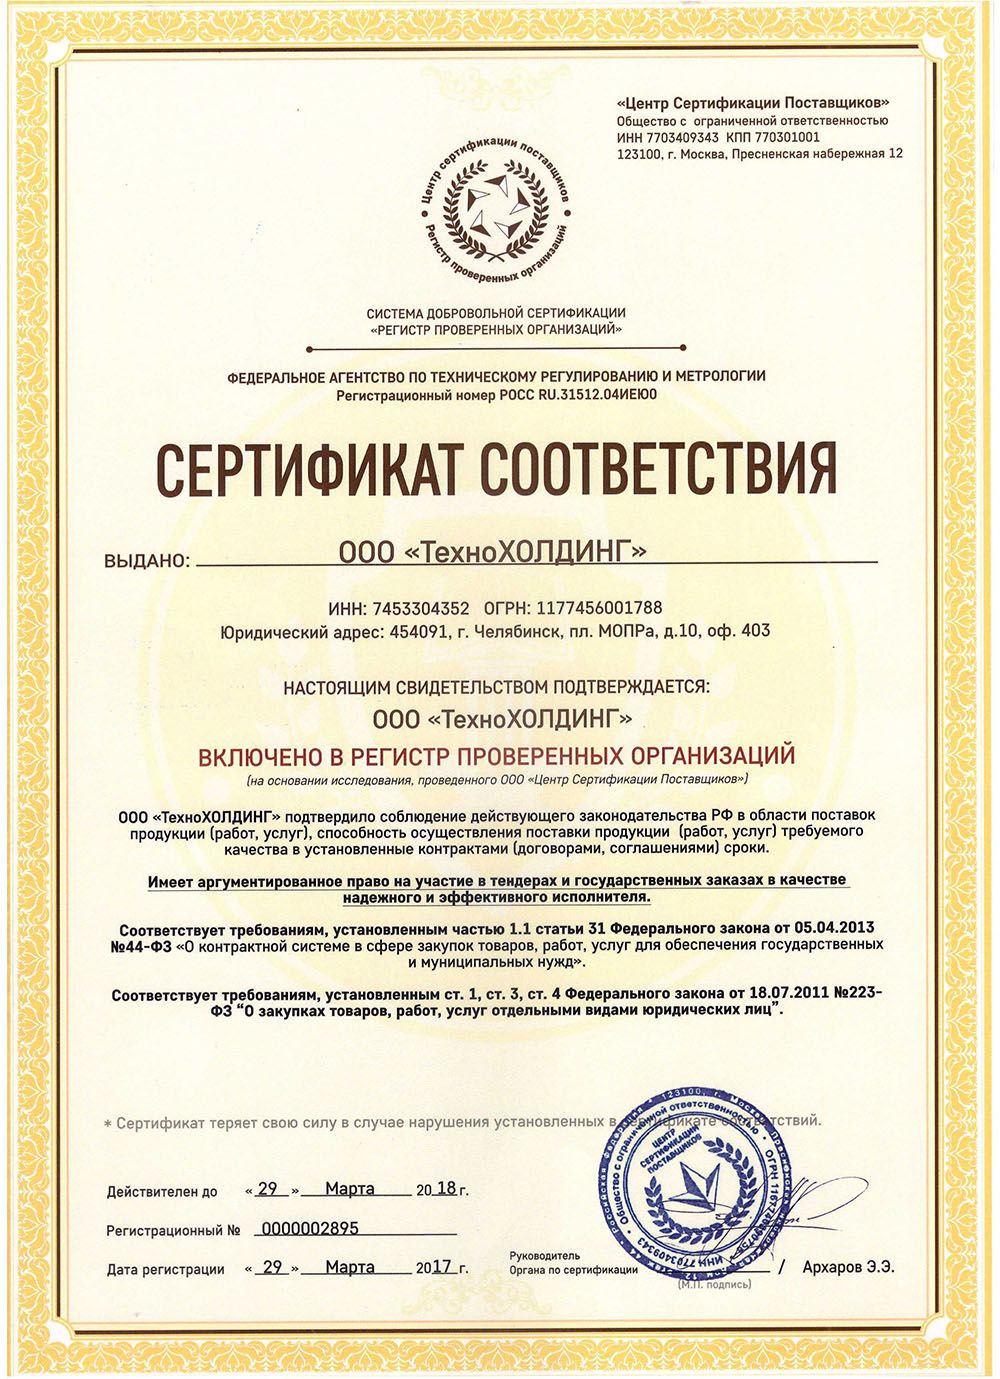 Сертификат соответствия о включении в регистр проверенных организаций